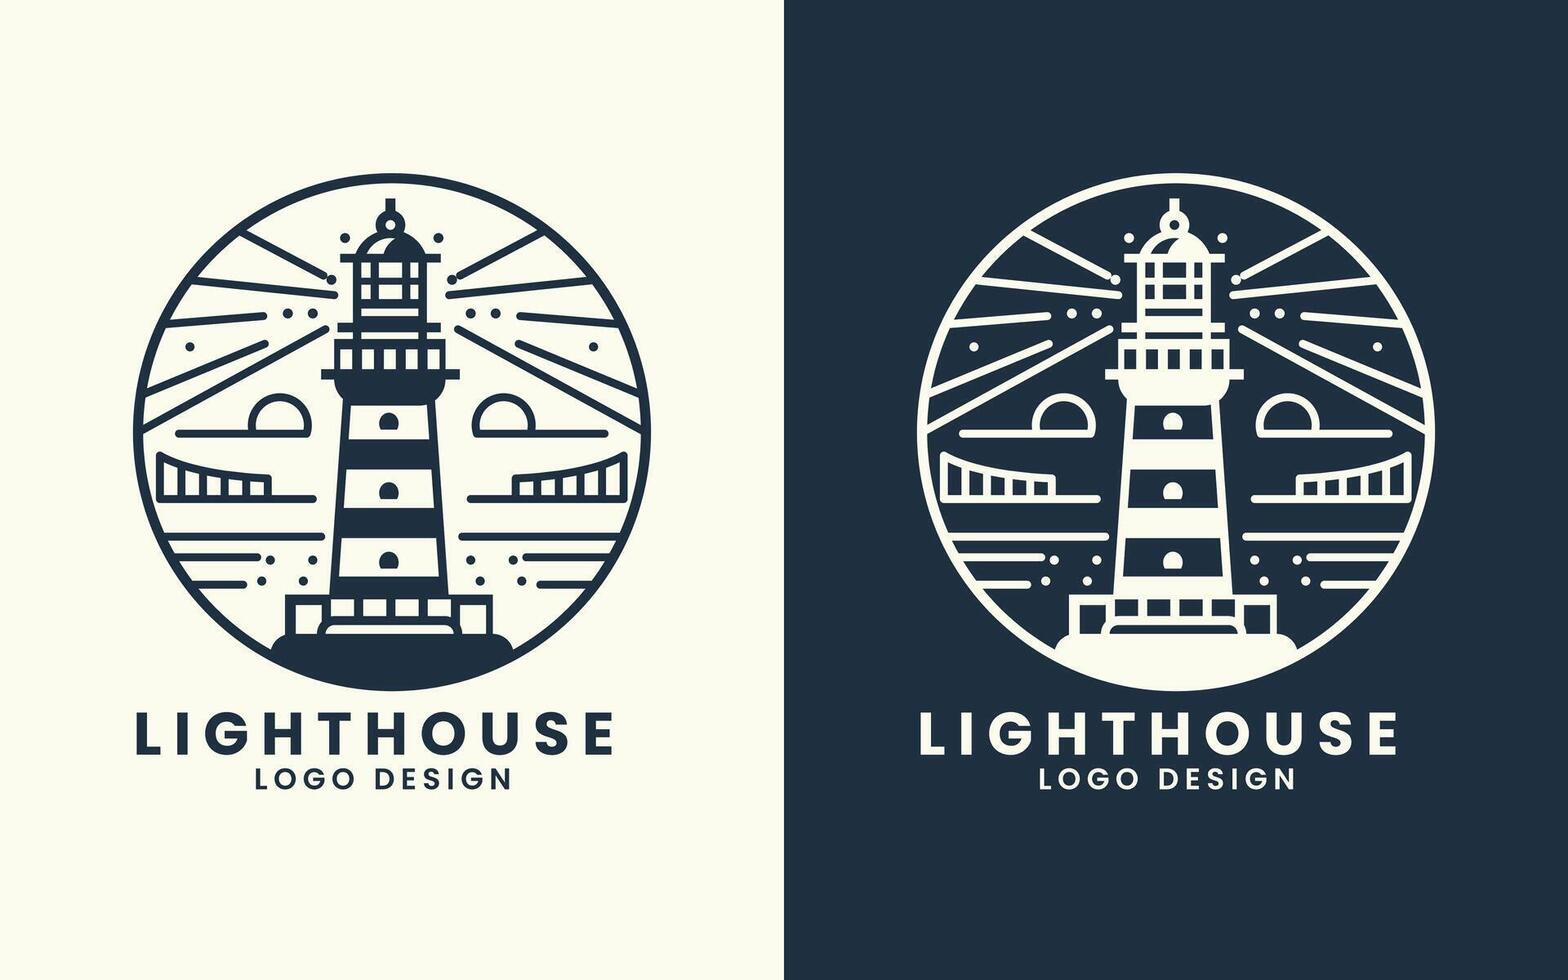 Lighthouse vector sea vector logo design template